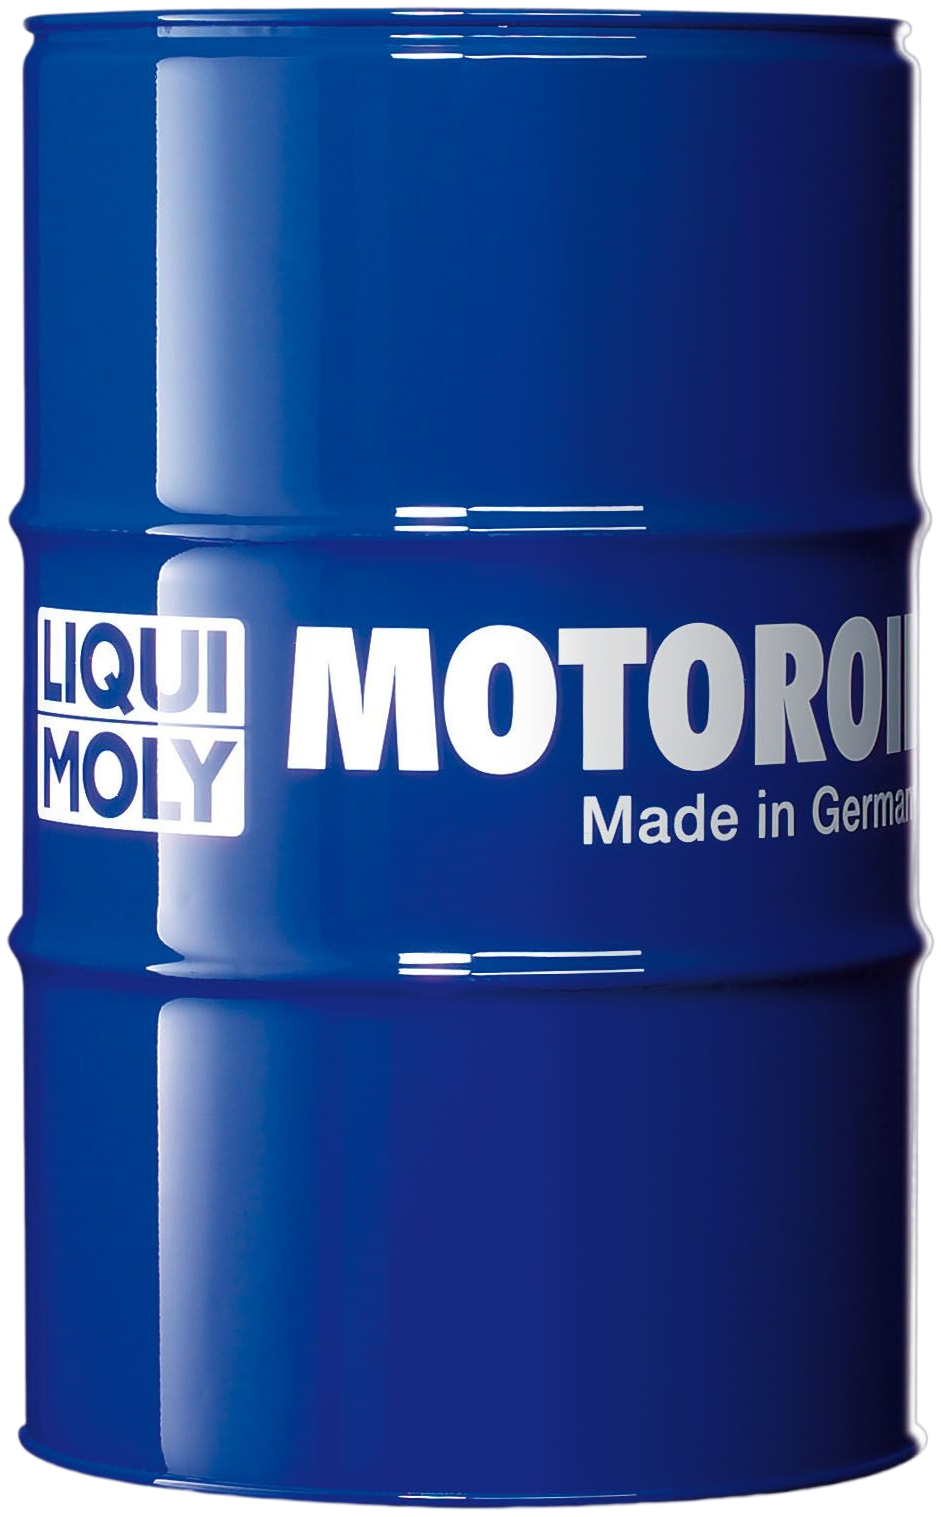 LM25029-60 Multigrade motorolie voor benzine-aangedreven binnen- en buitenboordmotoren. Kan met elke normaal verkrijgbare motorolie worden gemengd.